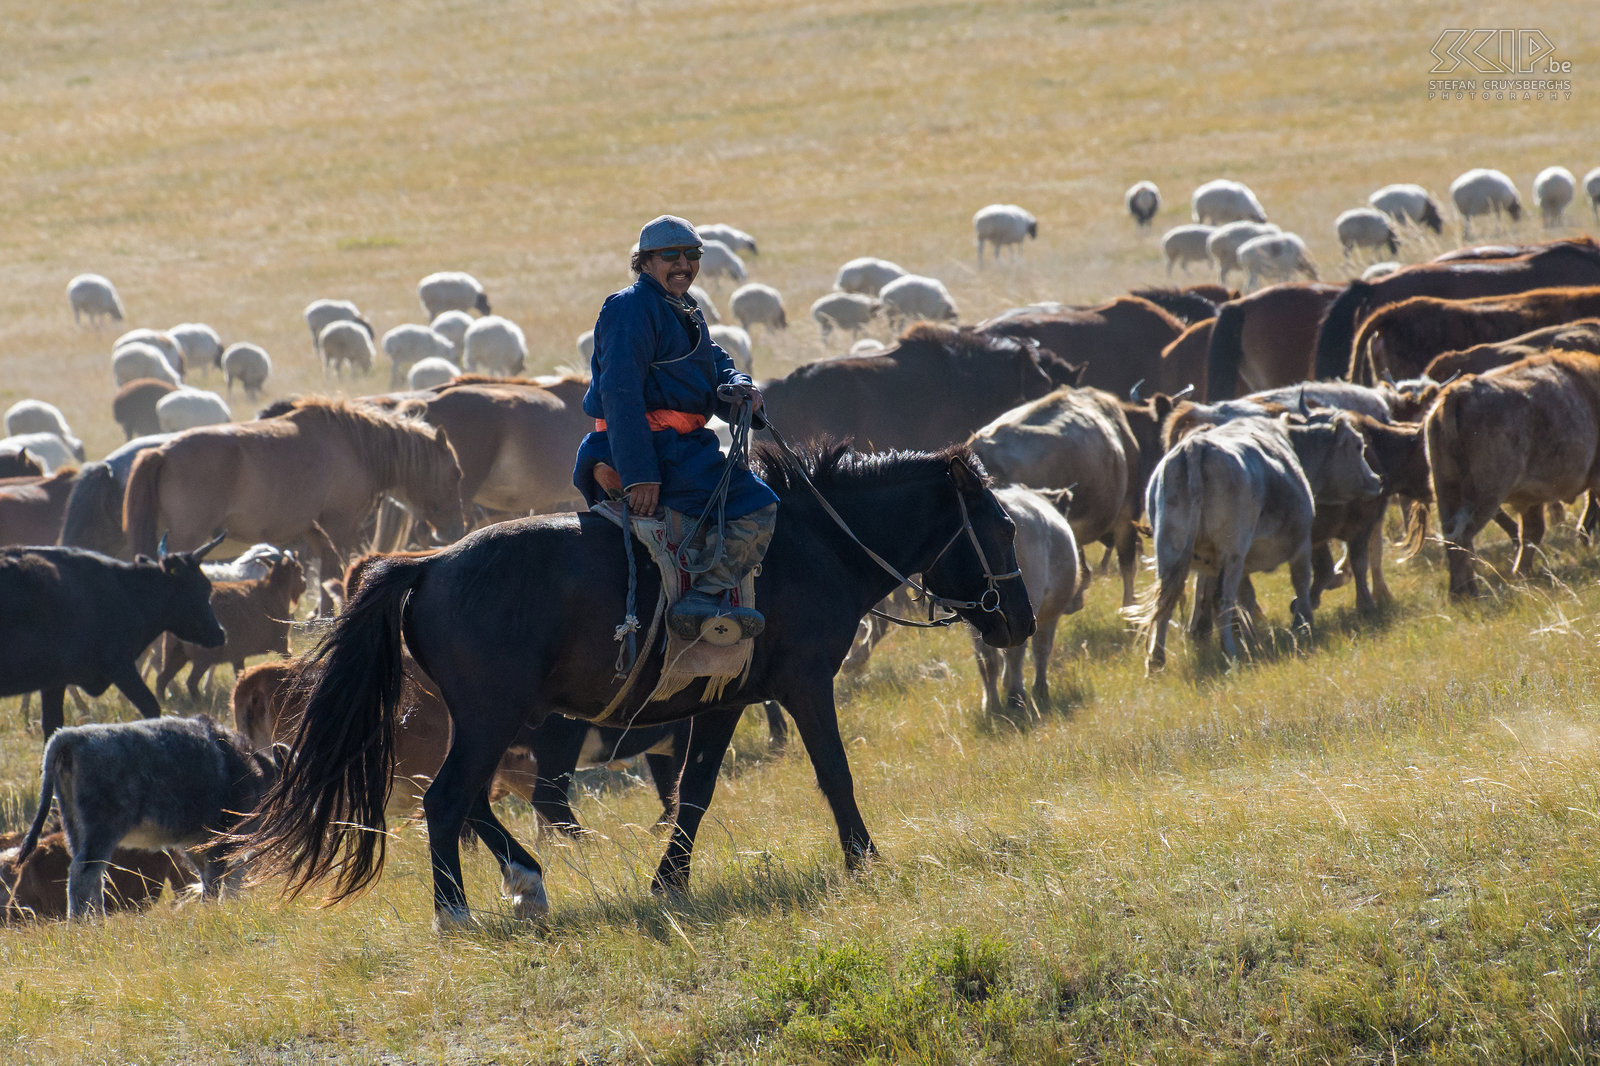 Hustai - Nomaden met kuddes We ontmoetten ook enkele Mongoolse nomaden die hun grote kuddes van paarden, koeien en schapen aan het verplaatsen waren naar het winter kamp. Na de zomer breken ze hun gers (traditionele Mongoolse tenten) op en verhuizen alle dieren naar een andere plaats waar ze de lange koude winter kunnen doorbrengen. Stefan Cruysberghs